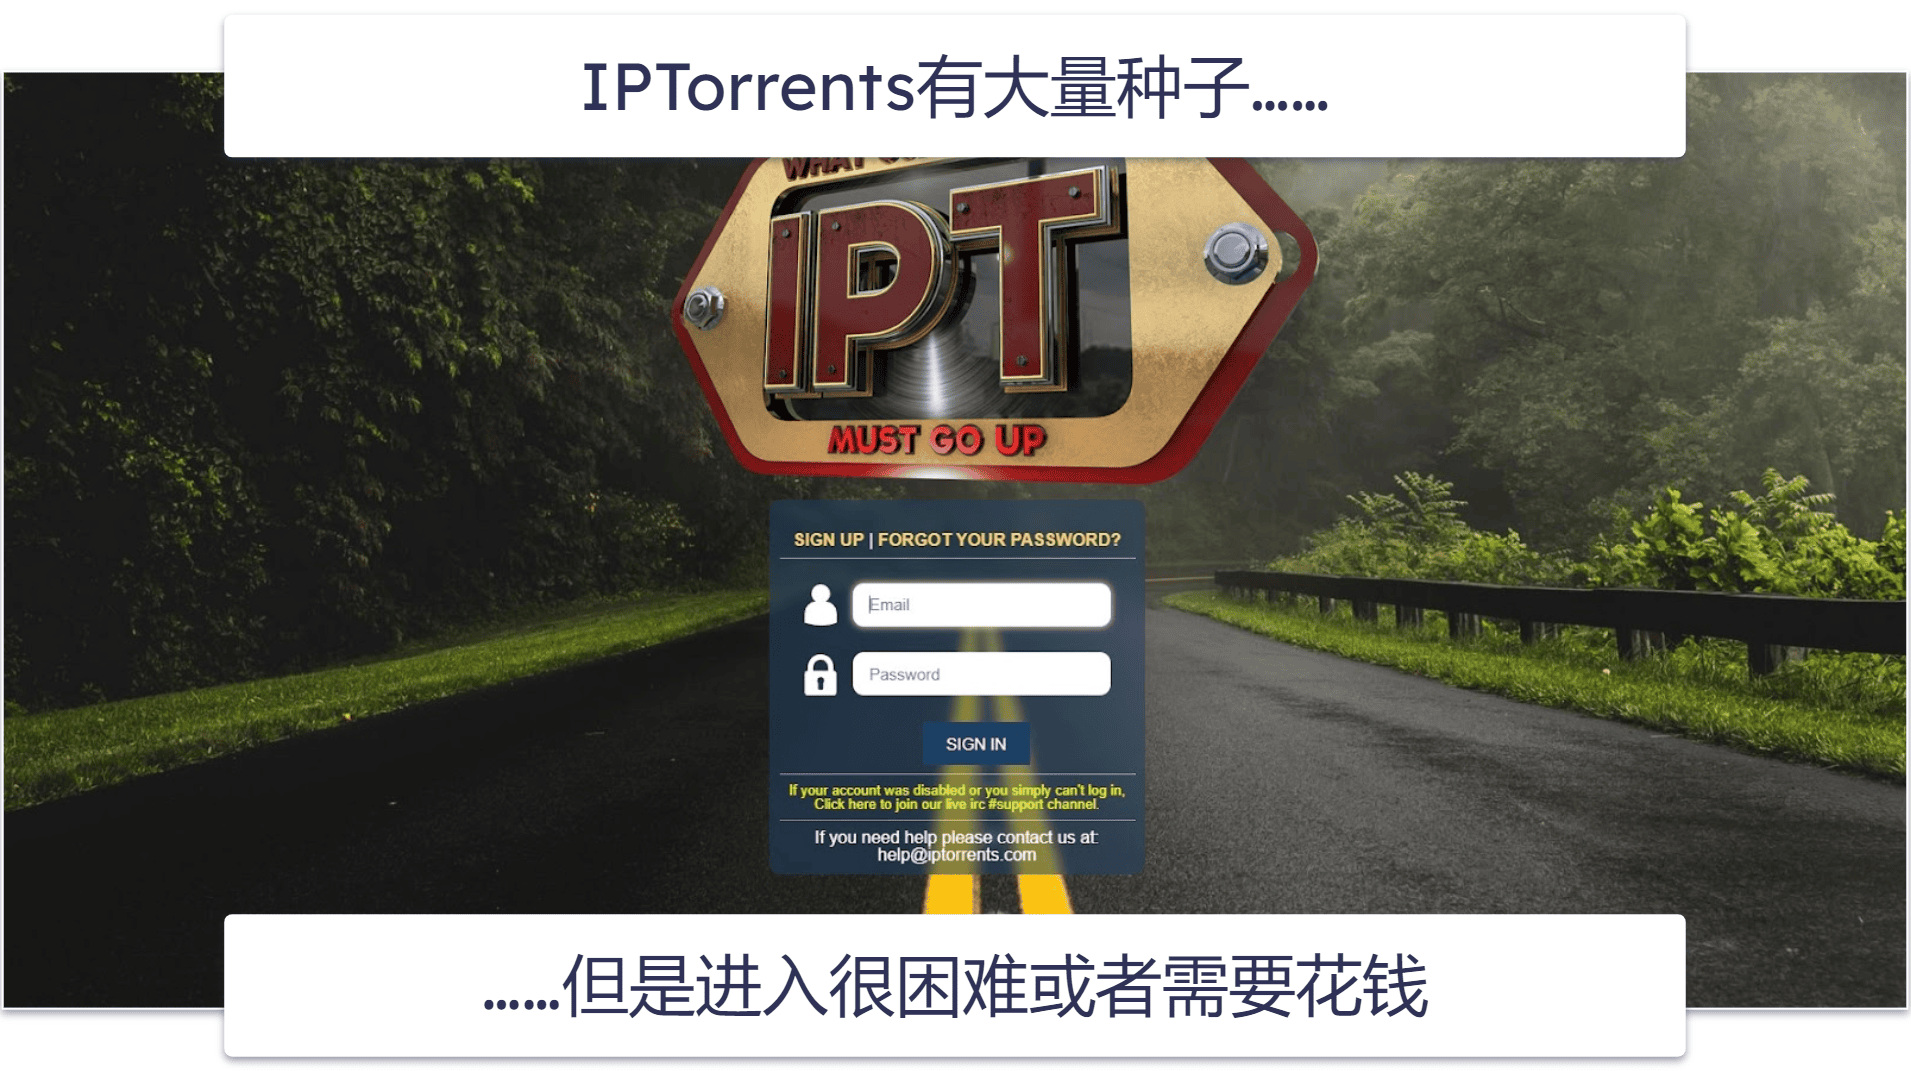 9. IPTorrents